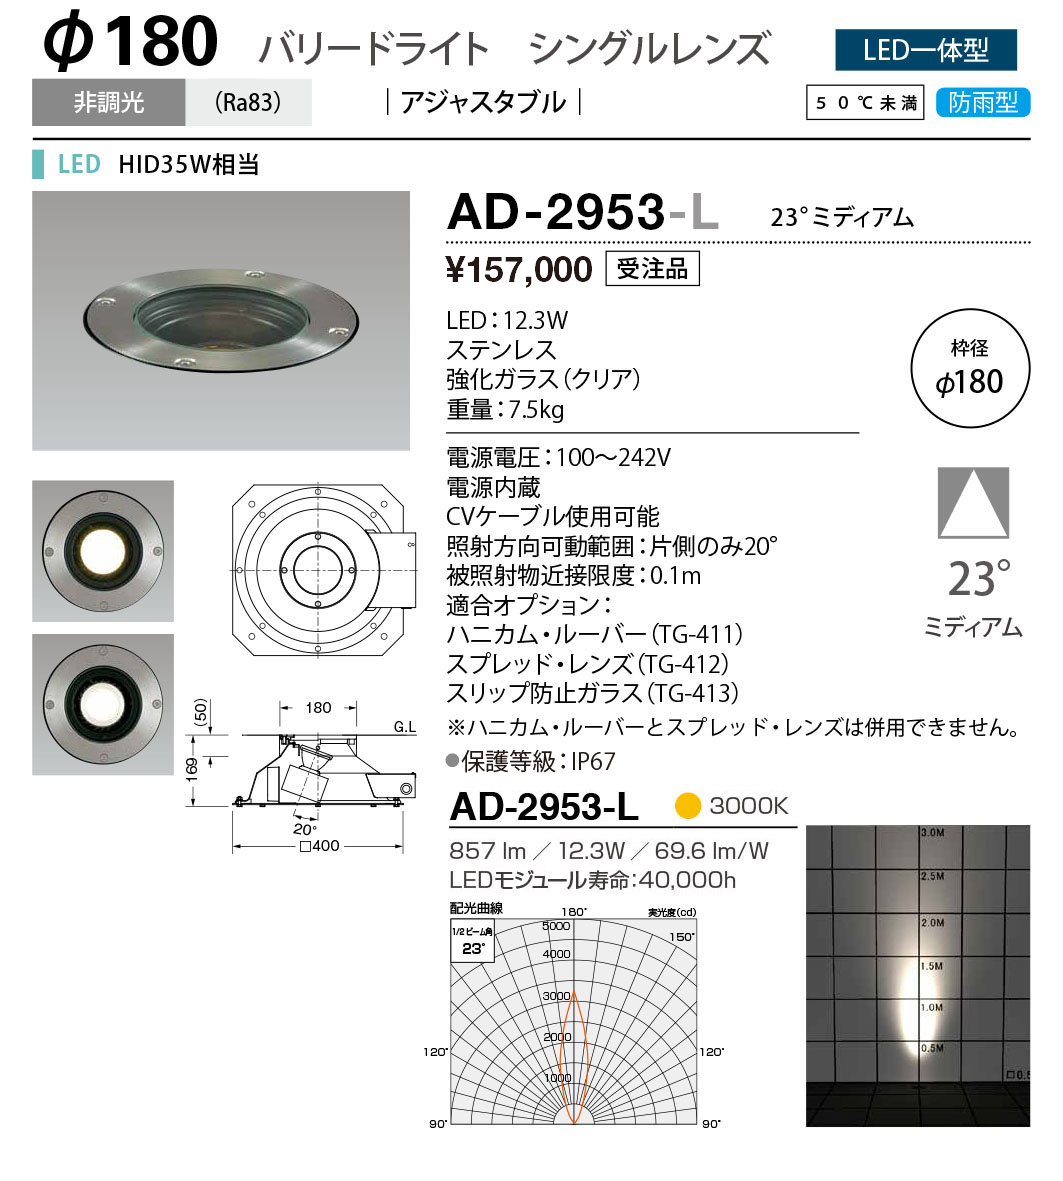 AD-2953-L 山田照明 バリードライト LED - 1